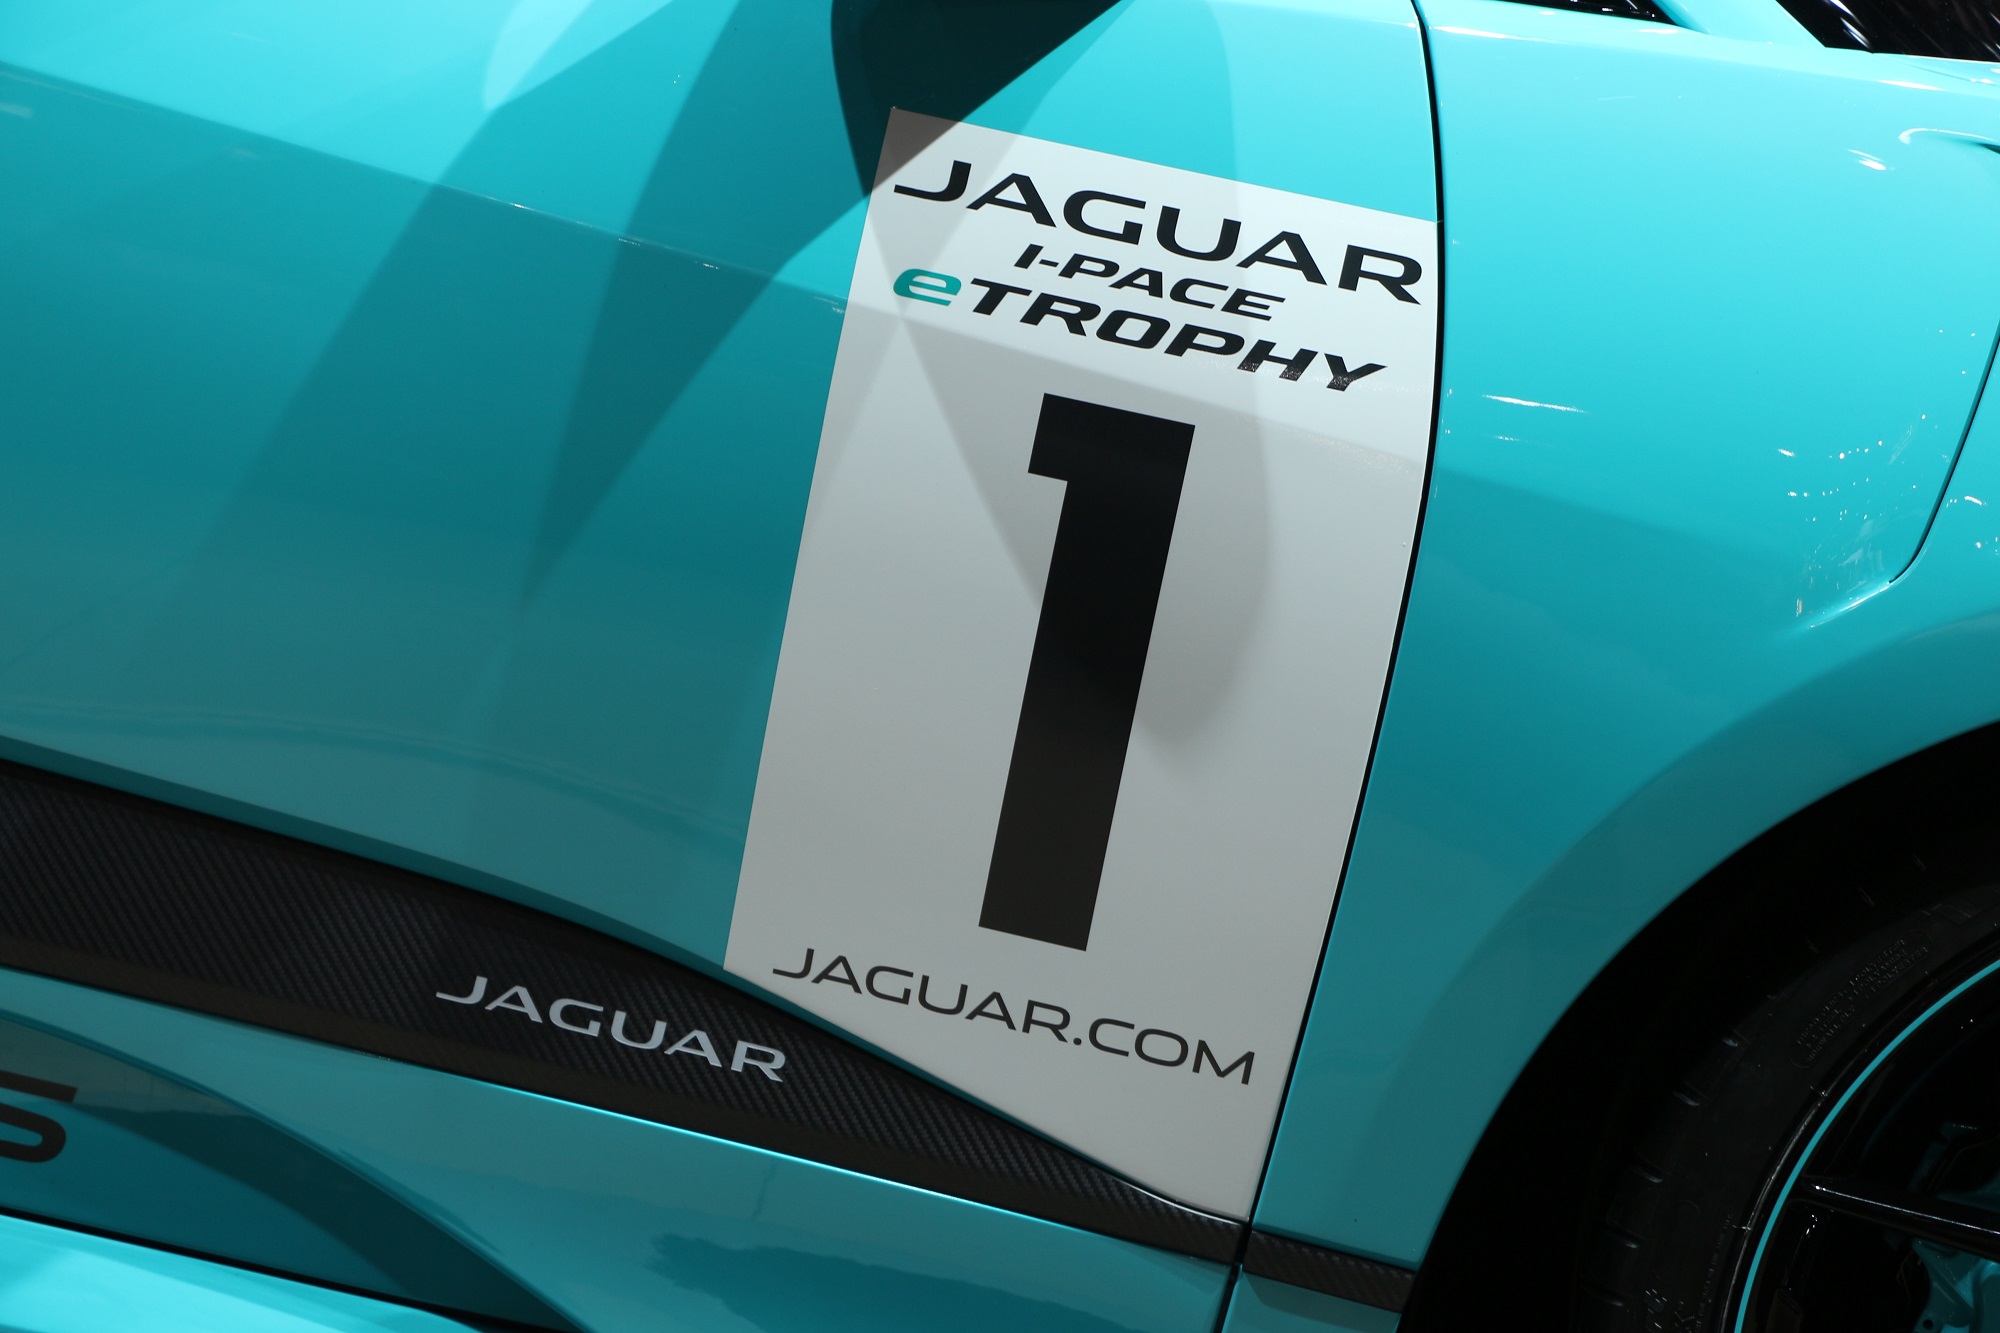 Jaguarforums.com 2018 2017 Jaguar I-PACE EV LA Los Angeles Auto Show Hybrid Electric eTrophy Race Car I-TYPE FIA Formula E